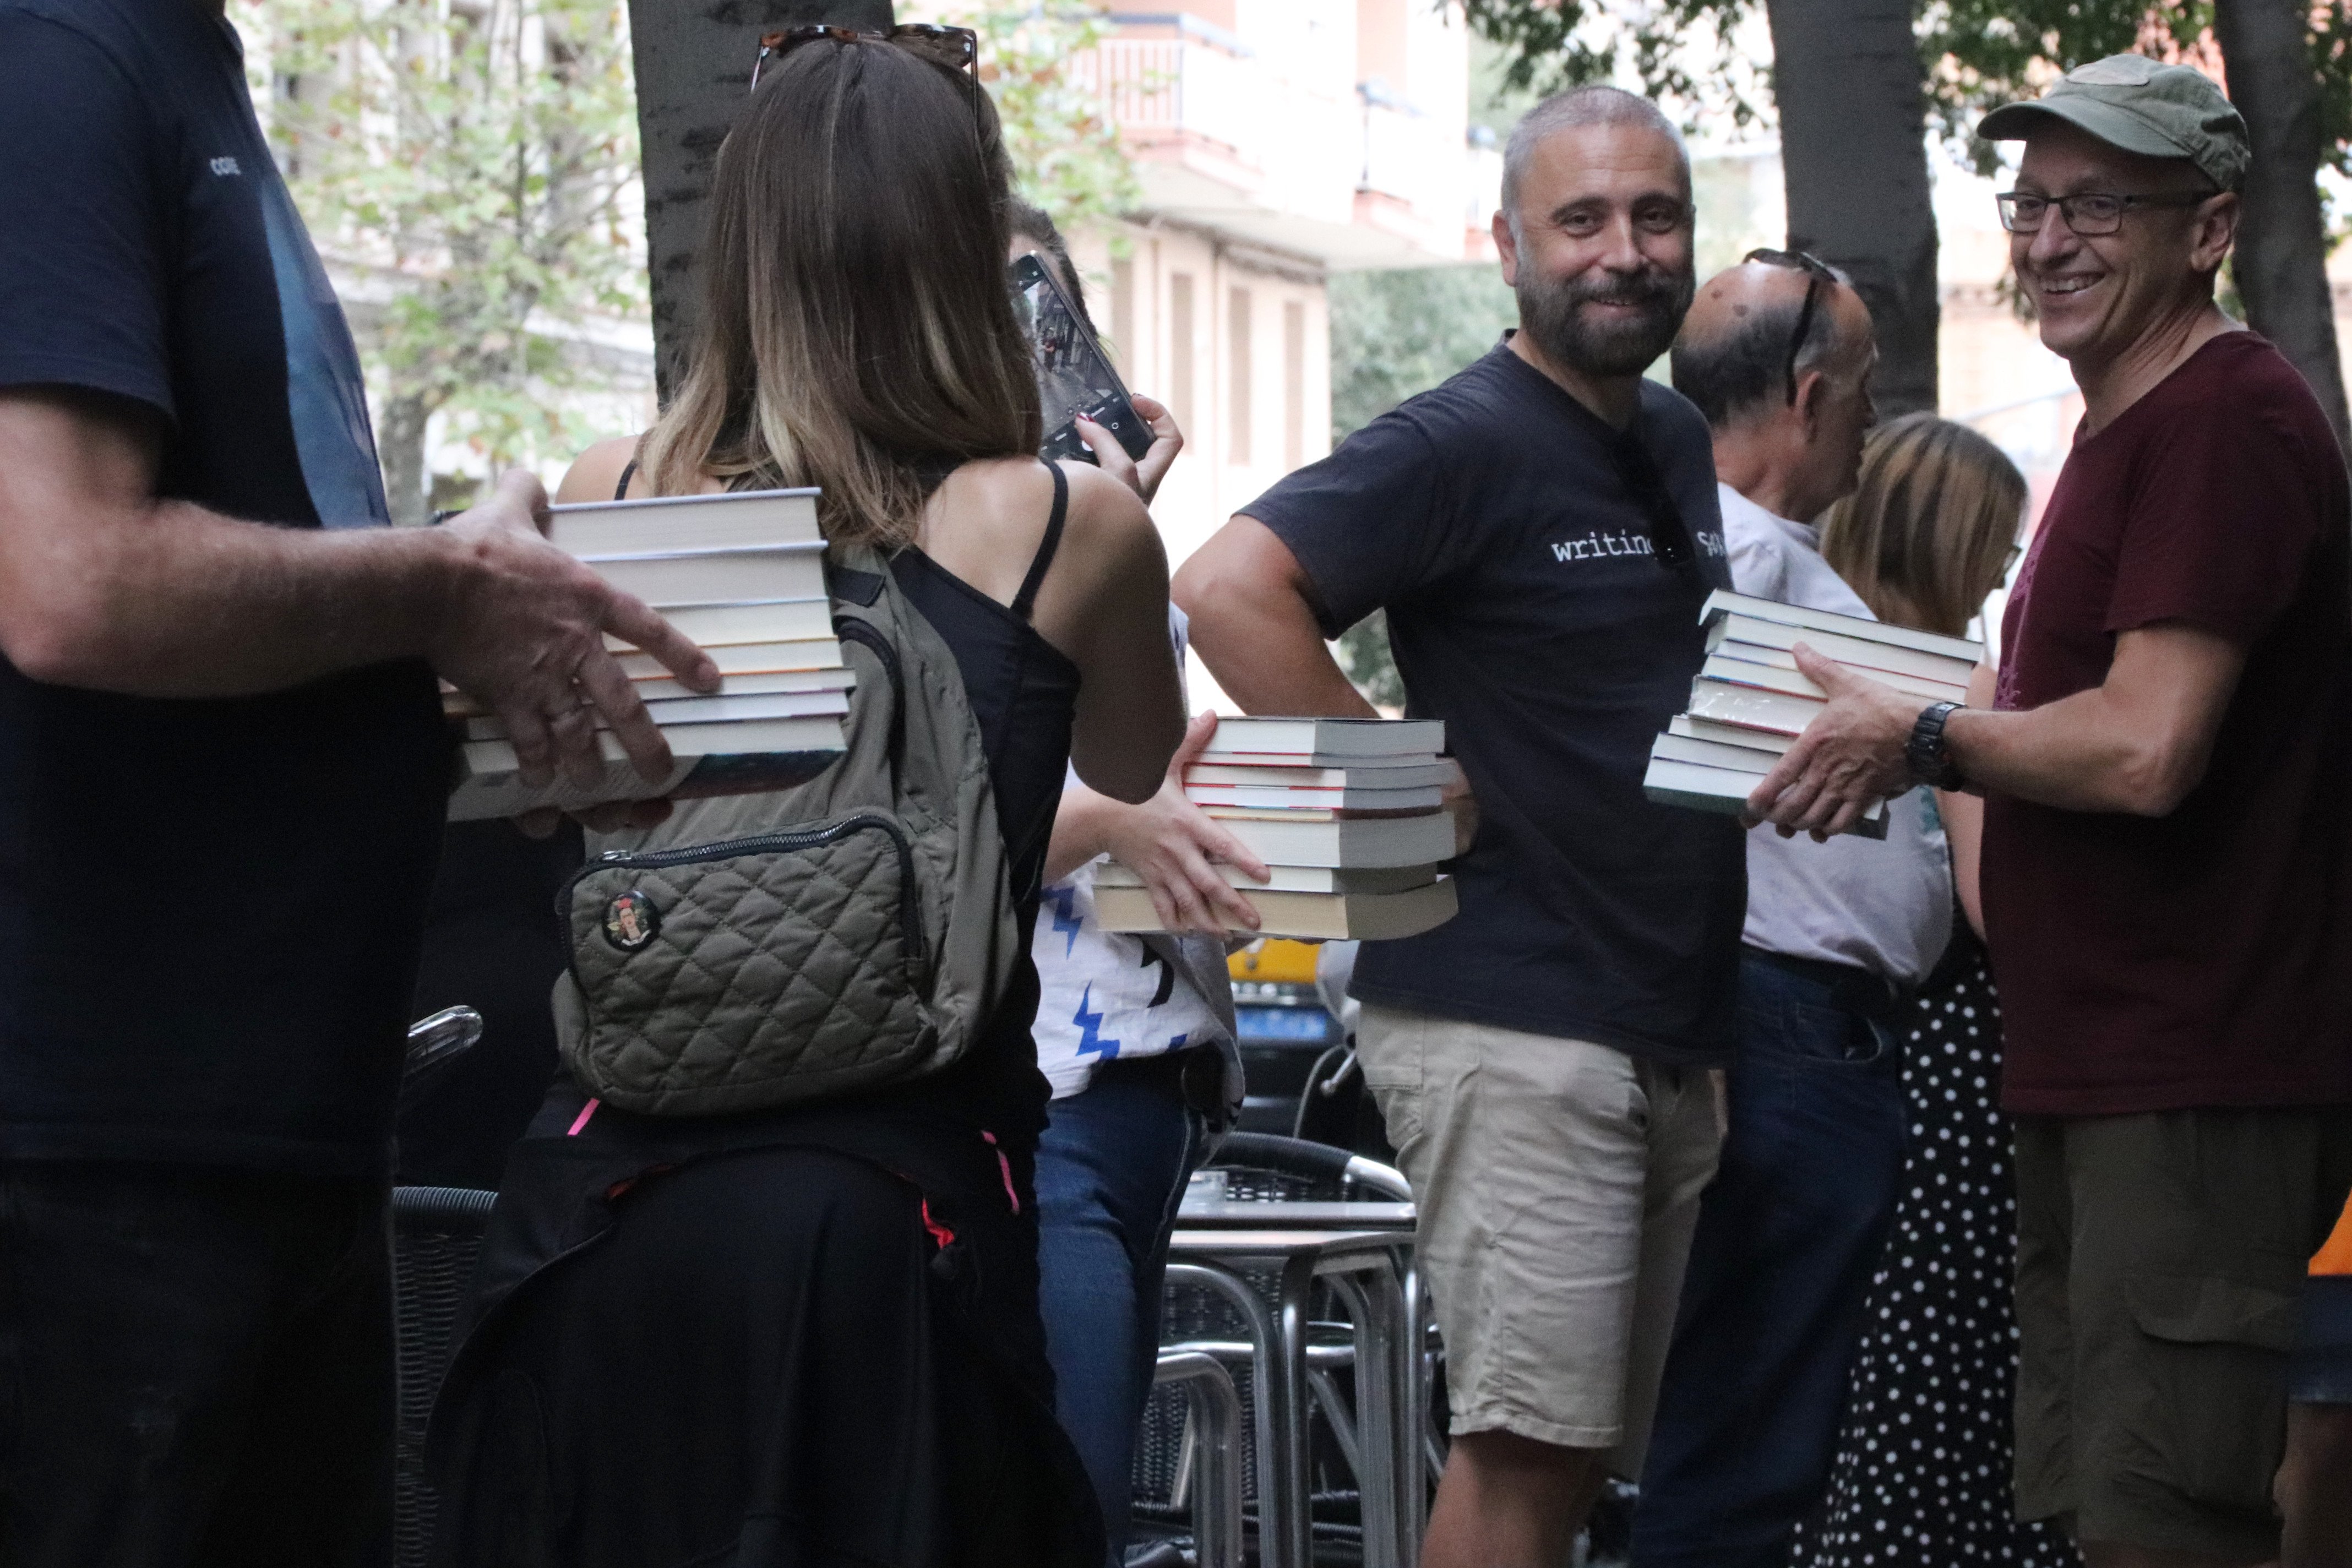 Una cadena humana trasllada més de 8.000 llibres de la llibreria Nollegiu del Clot al seu nou local